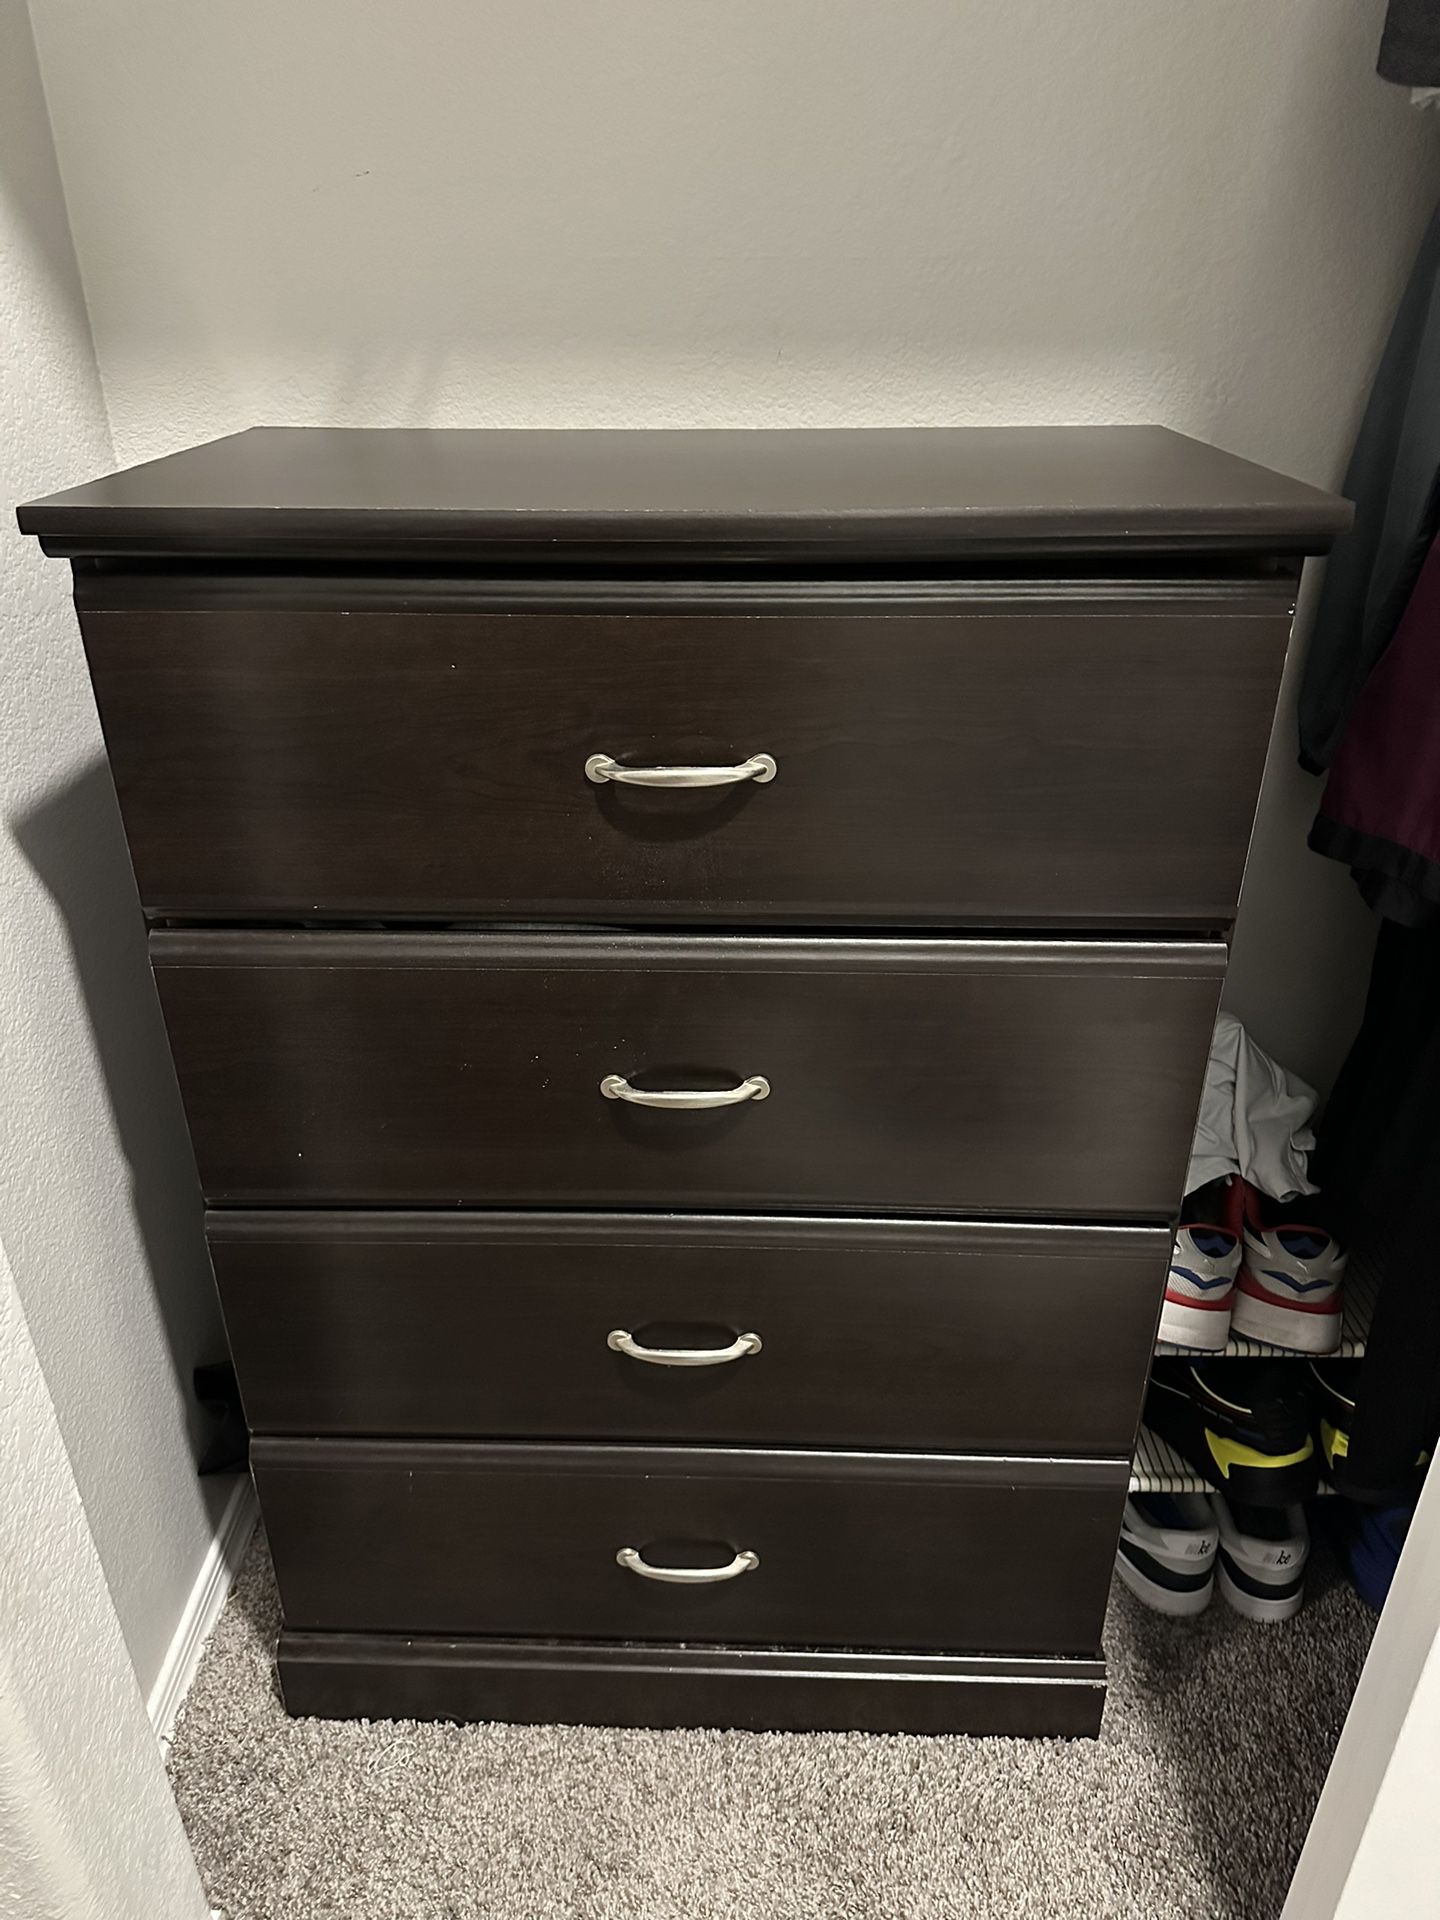 Dresser For Sale 50$